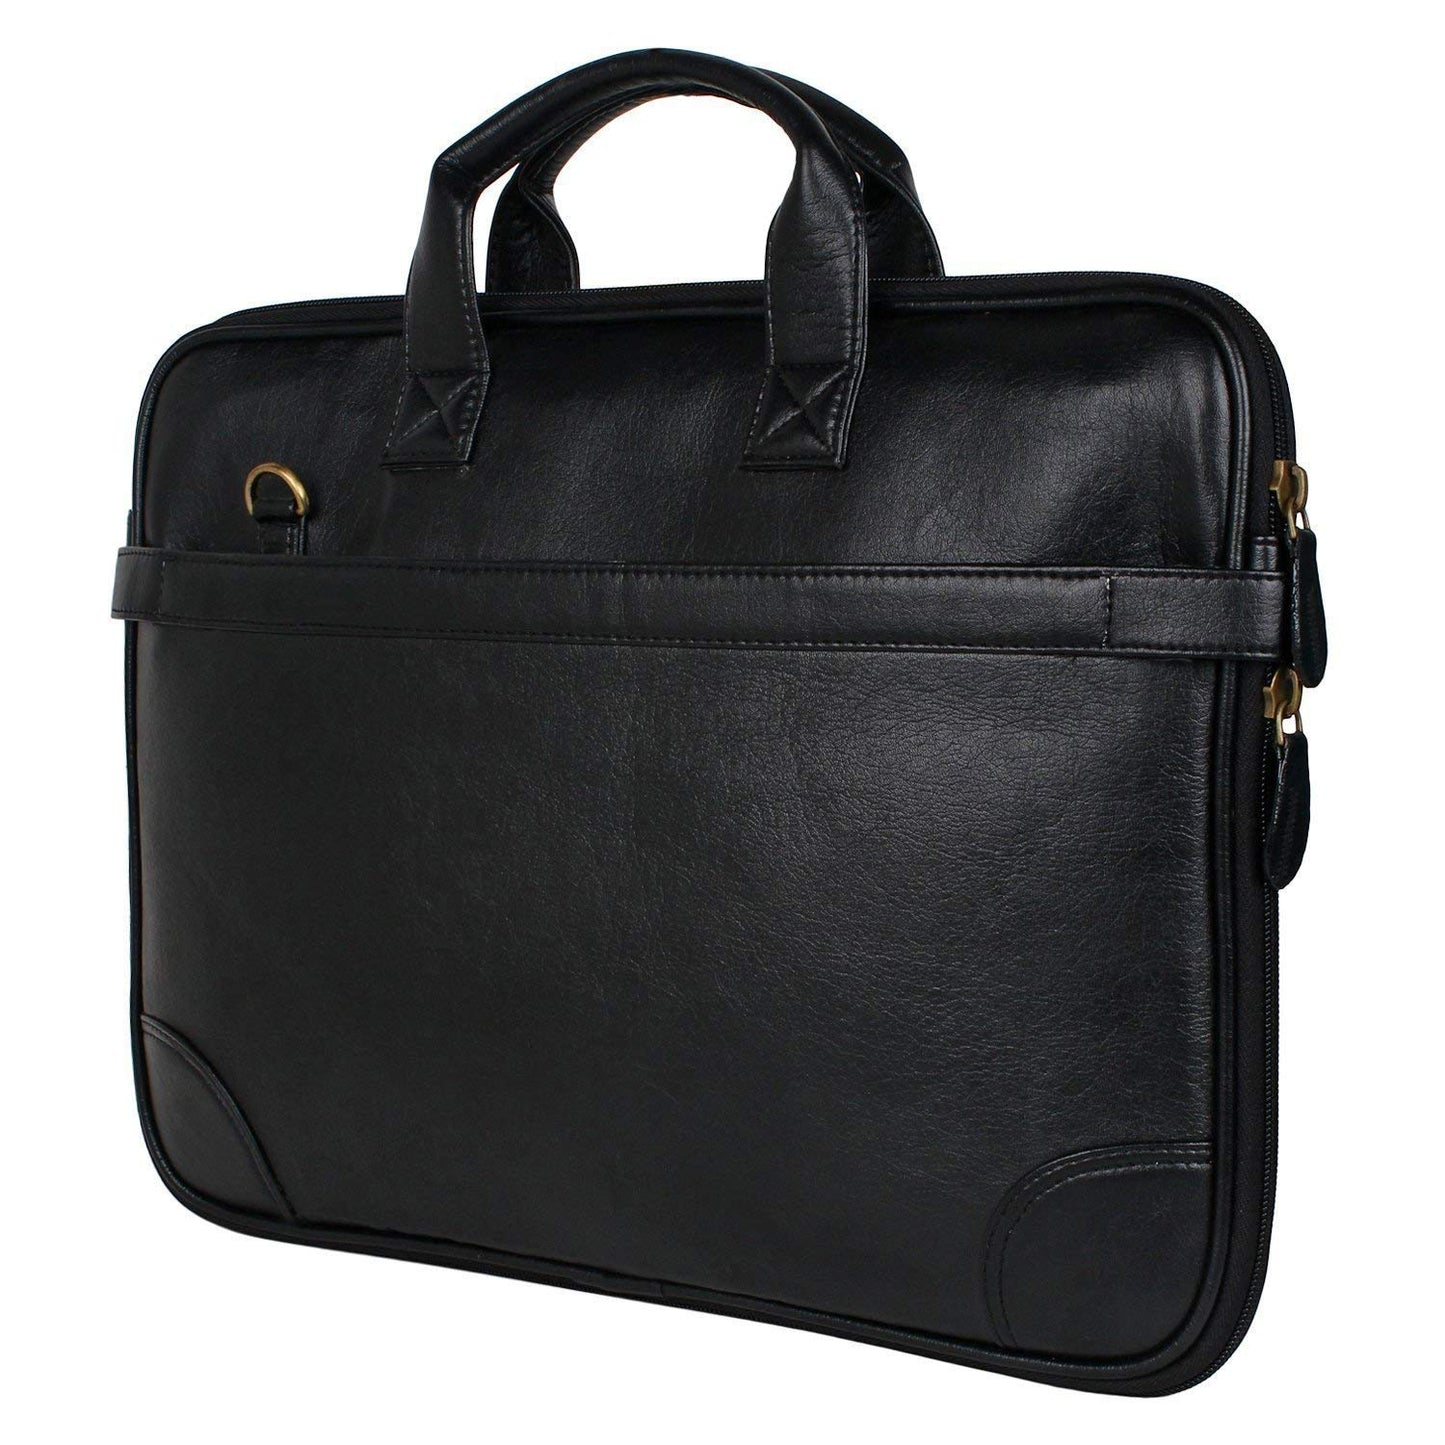 Rudra Exports Laptop Formal Office Black Messenger Briefcase Bag with Adjustable Shoulder Cross Body Sling Strap for Men & Women (Black)